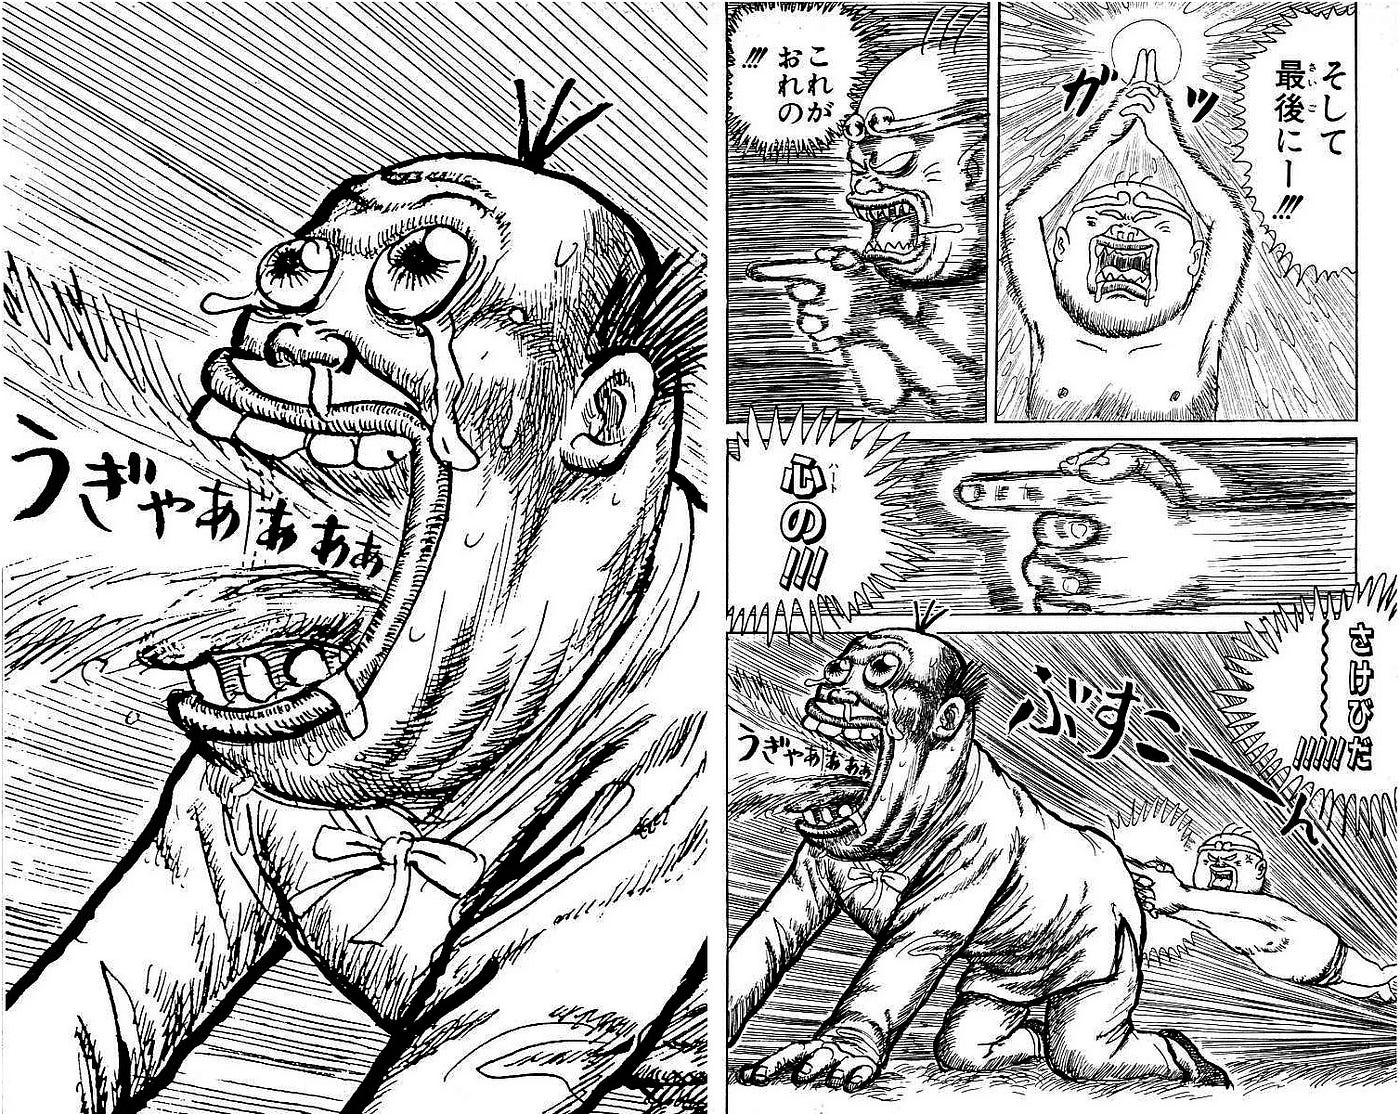 Causos da Shonen Jump: “Chinyuuki” e o dia em que uma briga de bar durou  quase 40 capítulos., by Nintakun